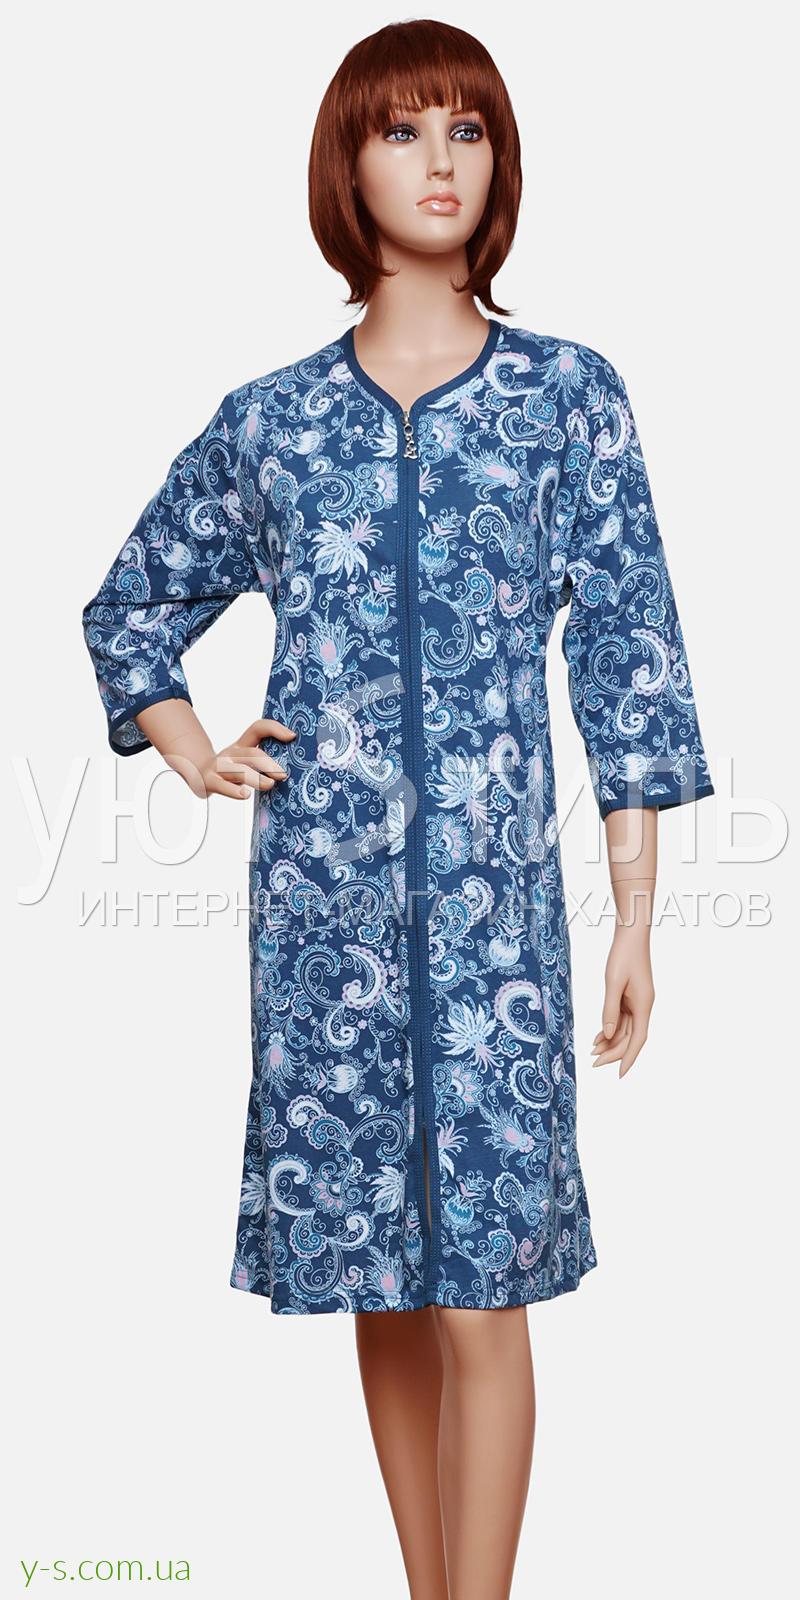 Трикотажный женский халат на молнии VA6512